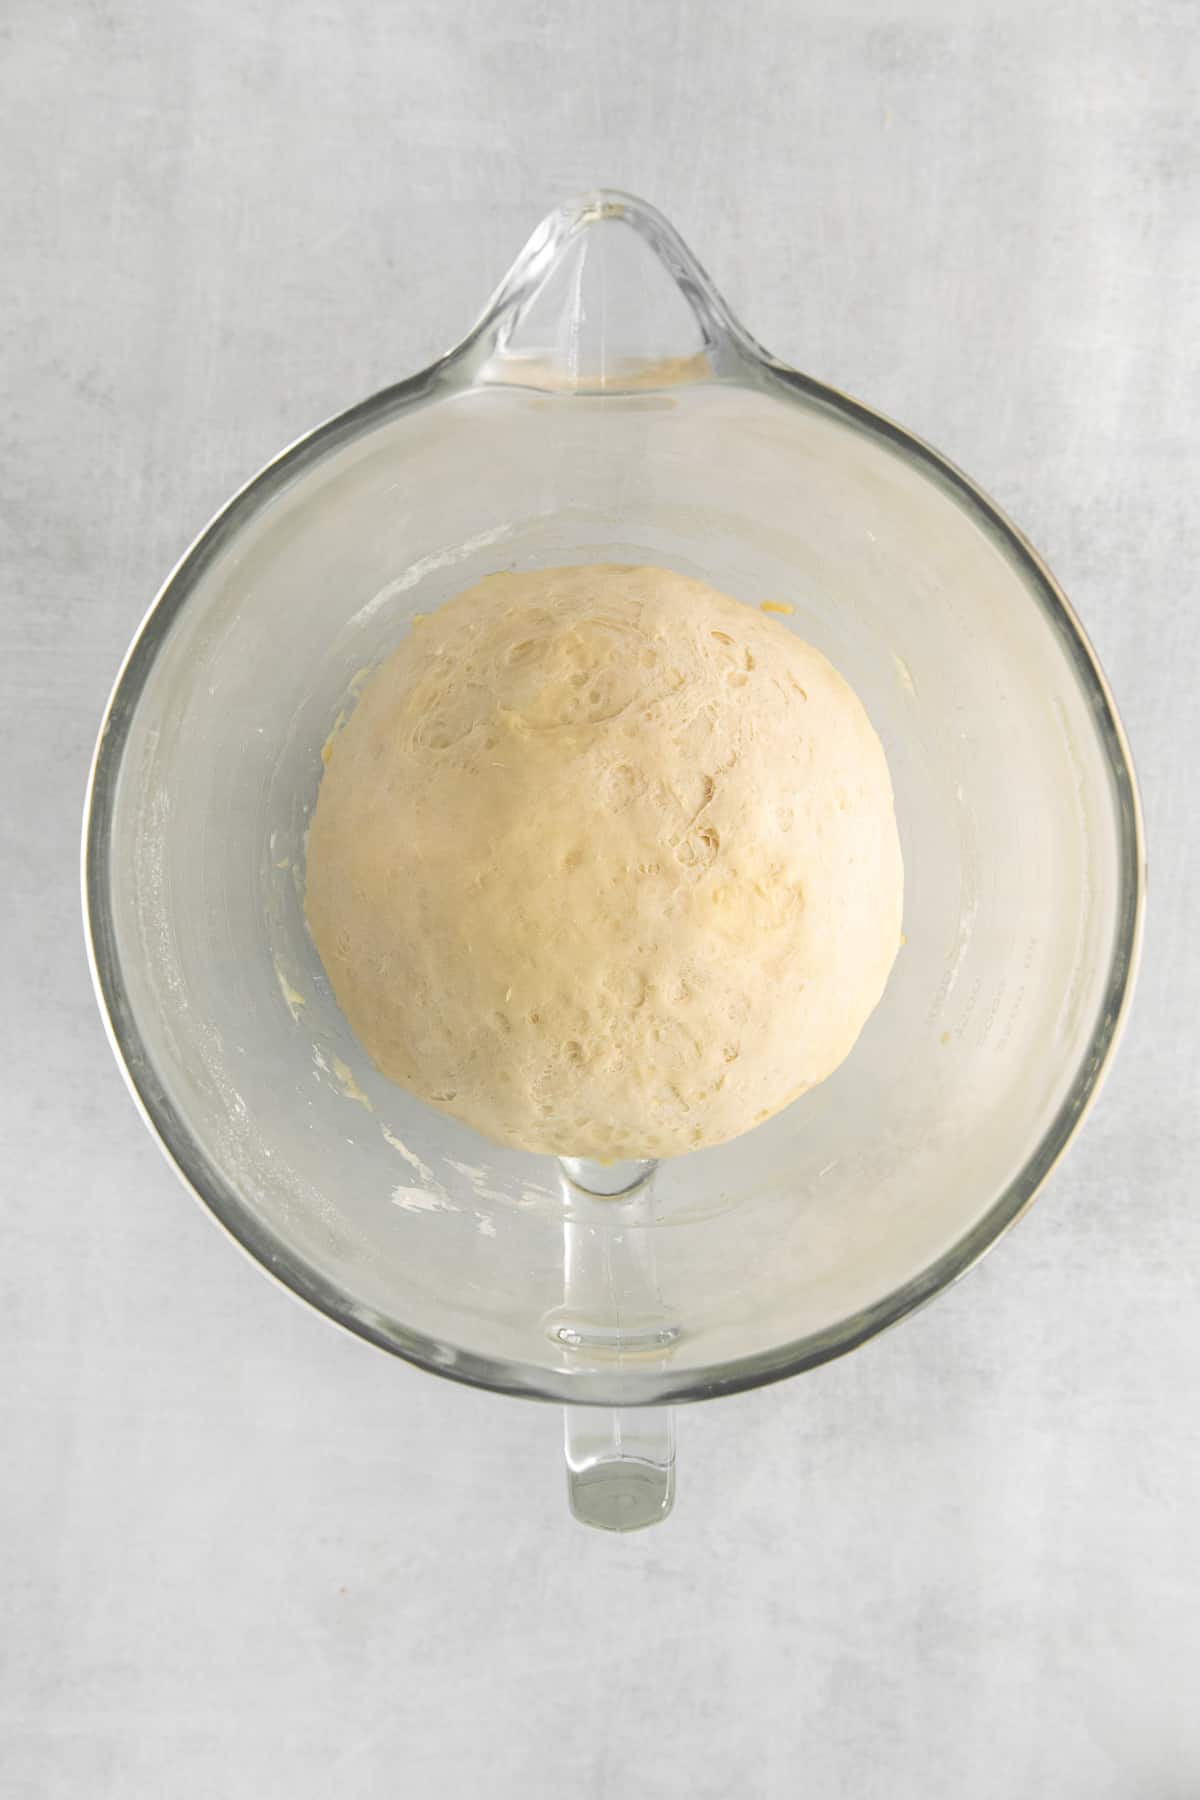 bagel dough in bowl.